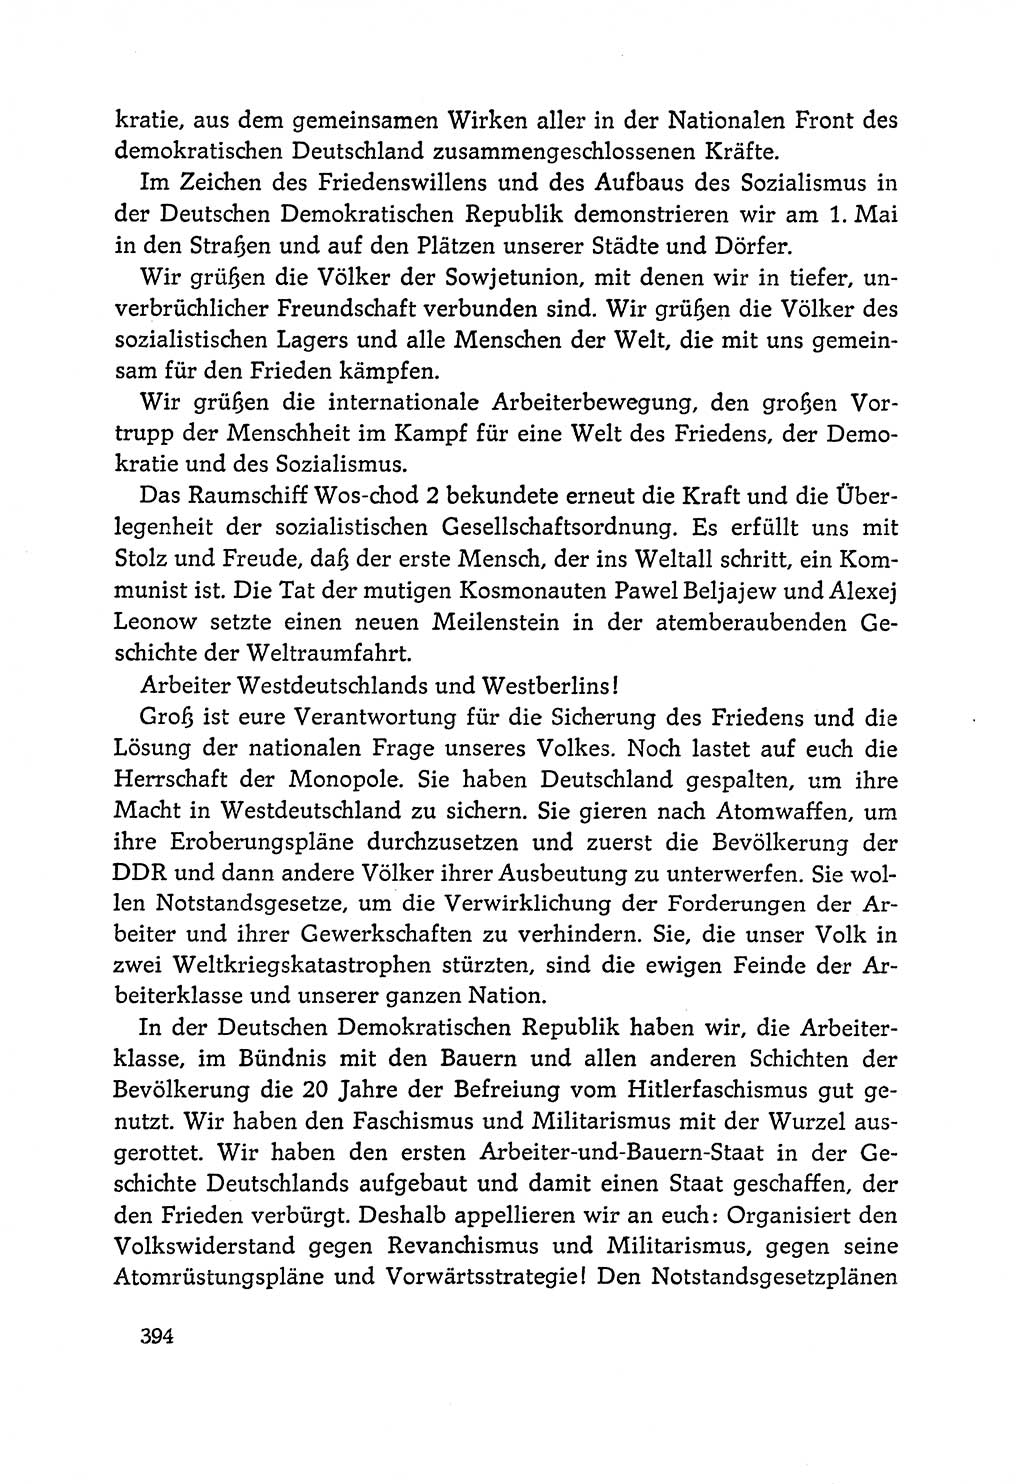 Dokumente der Sozialistischen Einheitspartei Deutschlands (SED) [Deutsche Demokratische Republik (DDR)] 1964-1965, Seite 394 (Dok. SED DDR 1964-1965, S. 394)